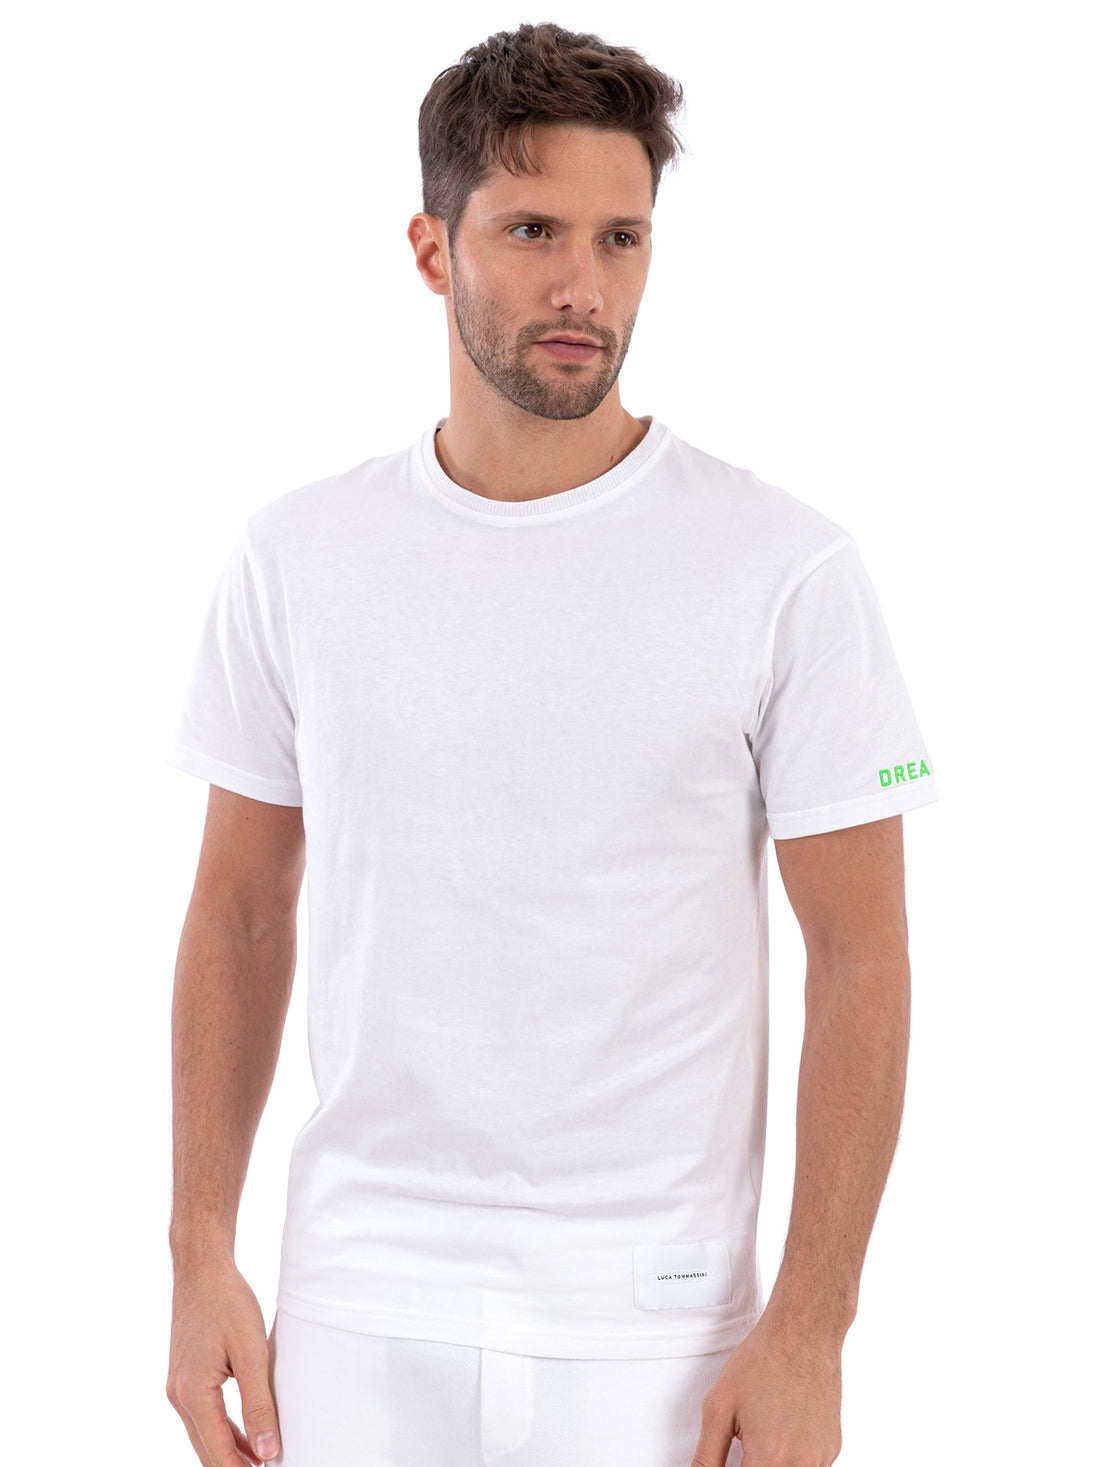 T-shirt Bianco Freddy